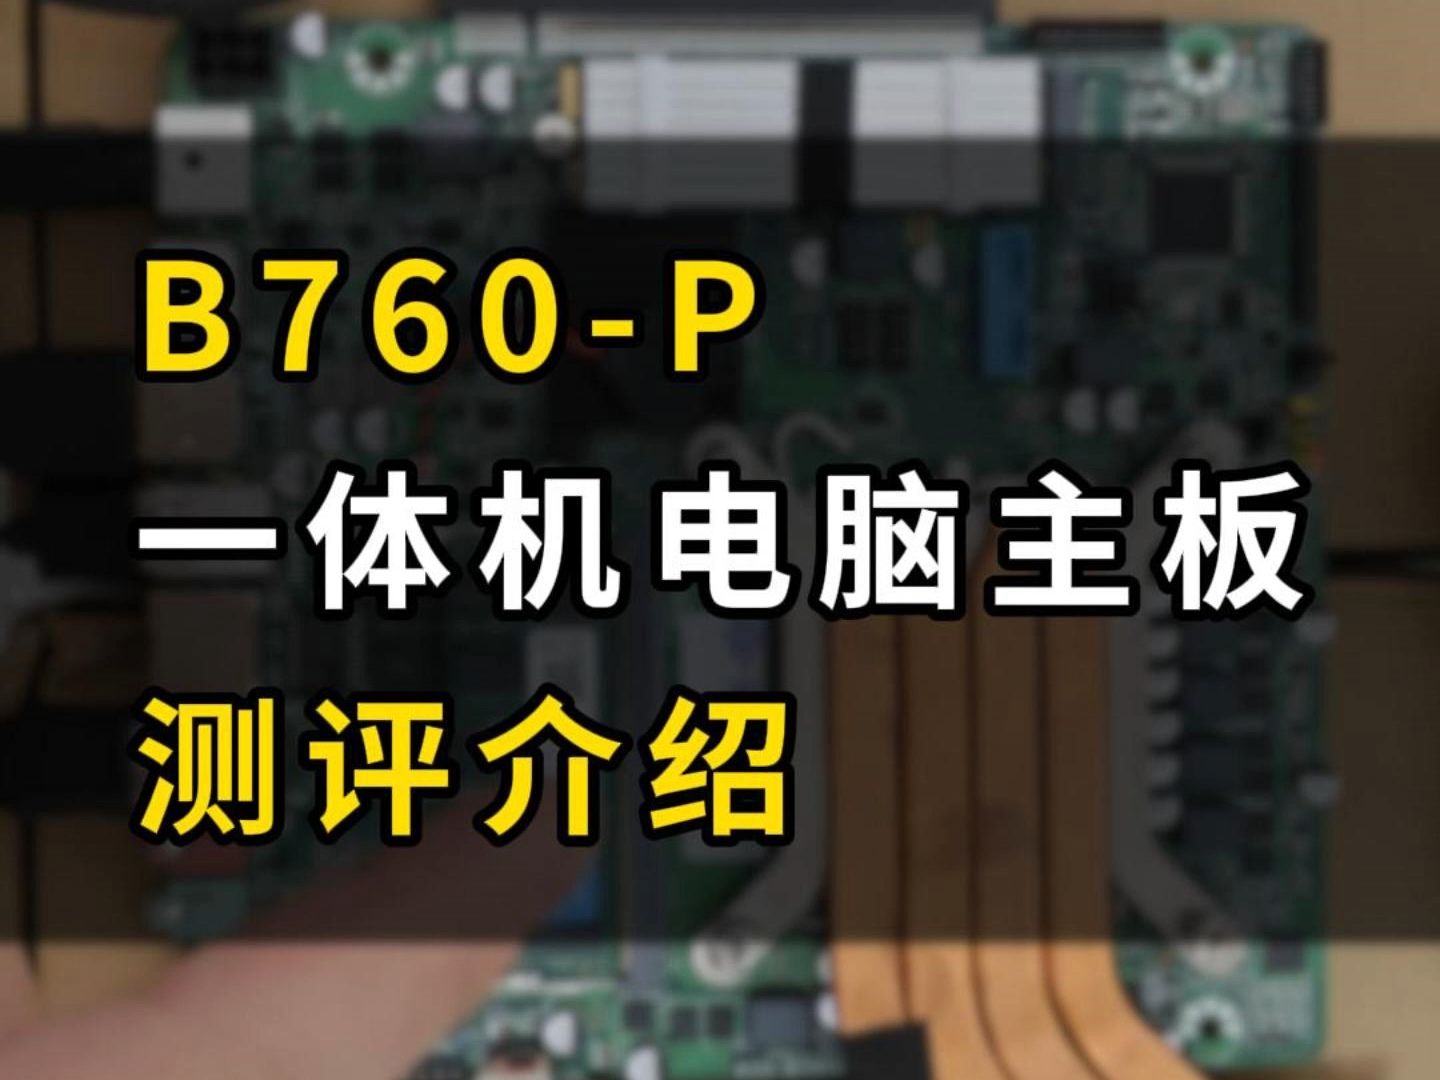 760 主板是否兼容 DDR3 内存？分享亲身经历与兼容性问题探讨  第9张